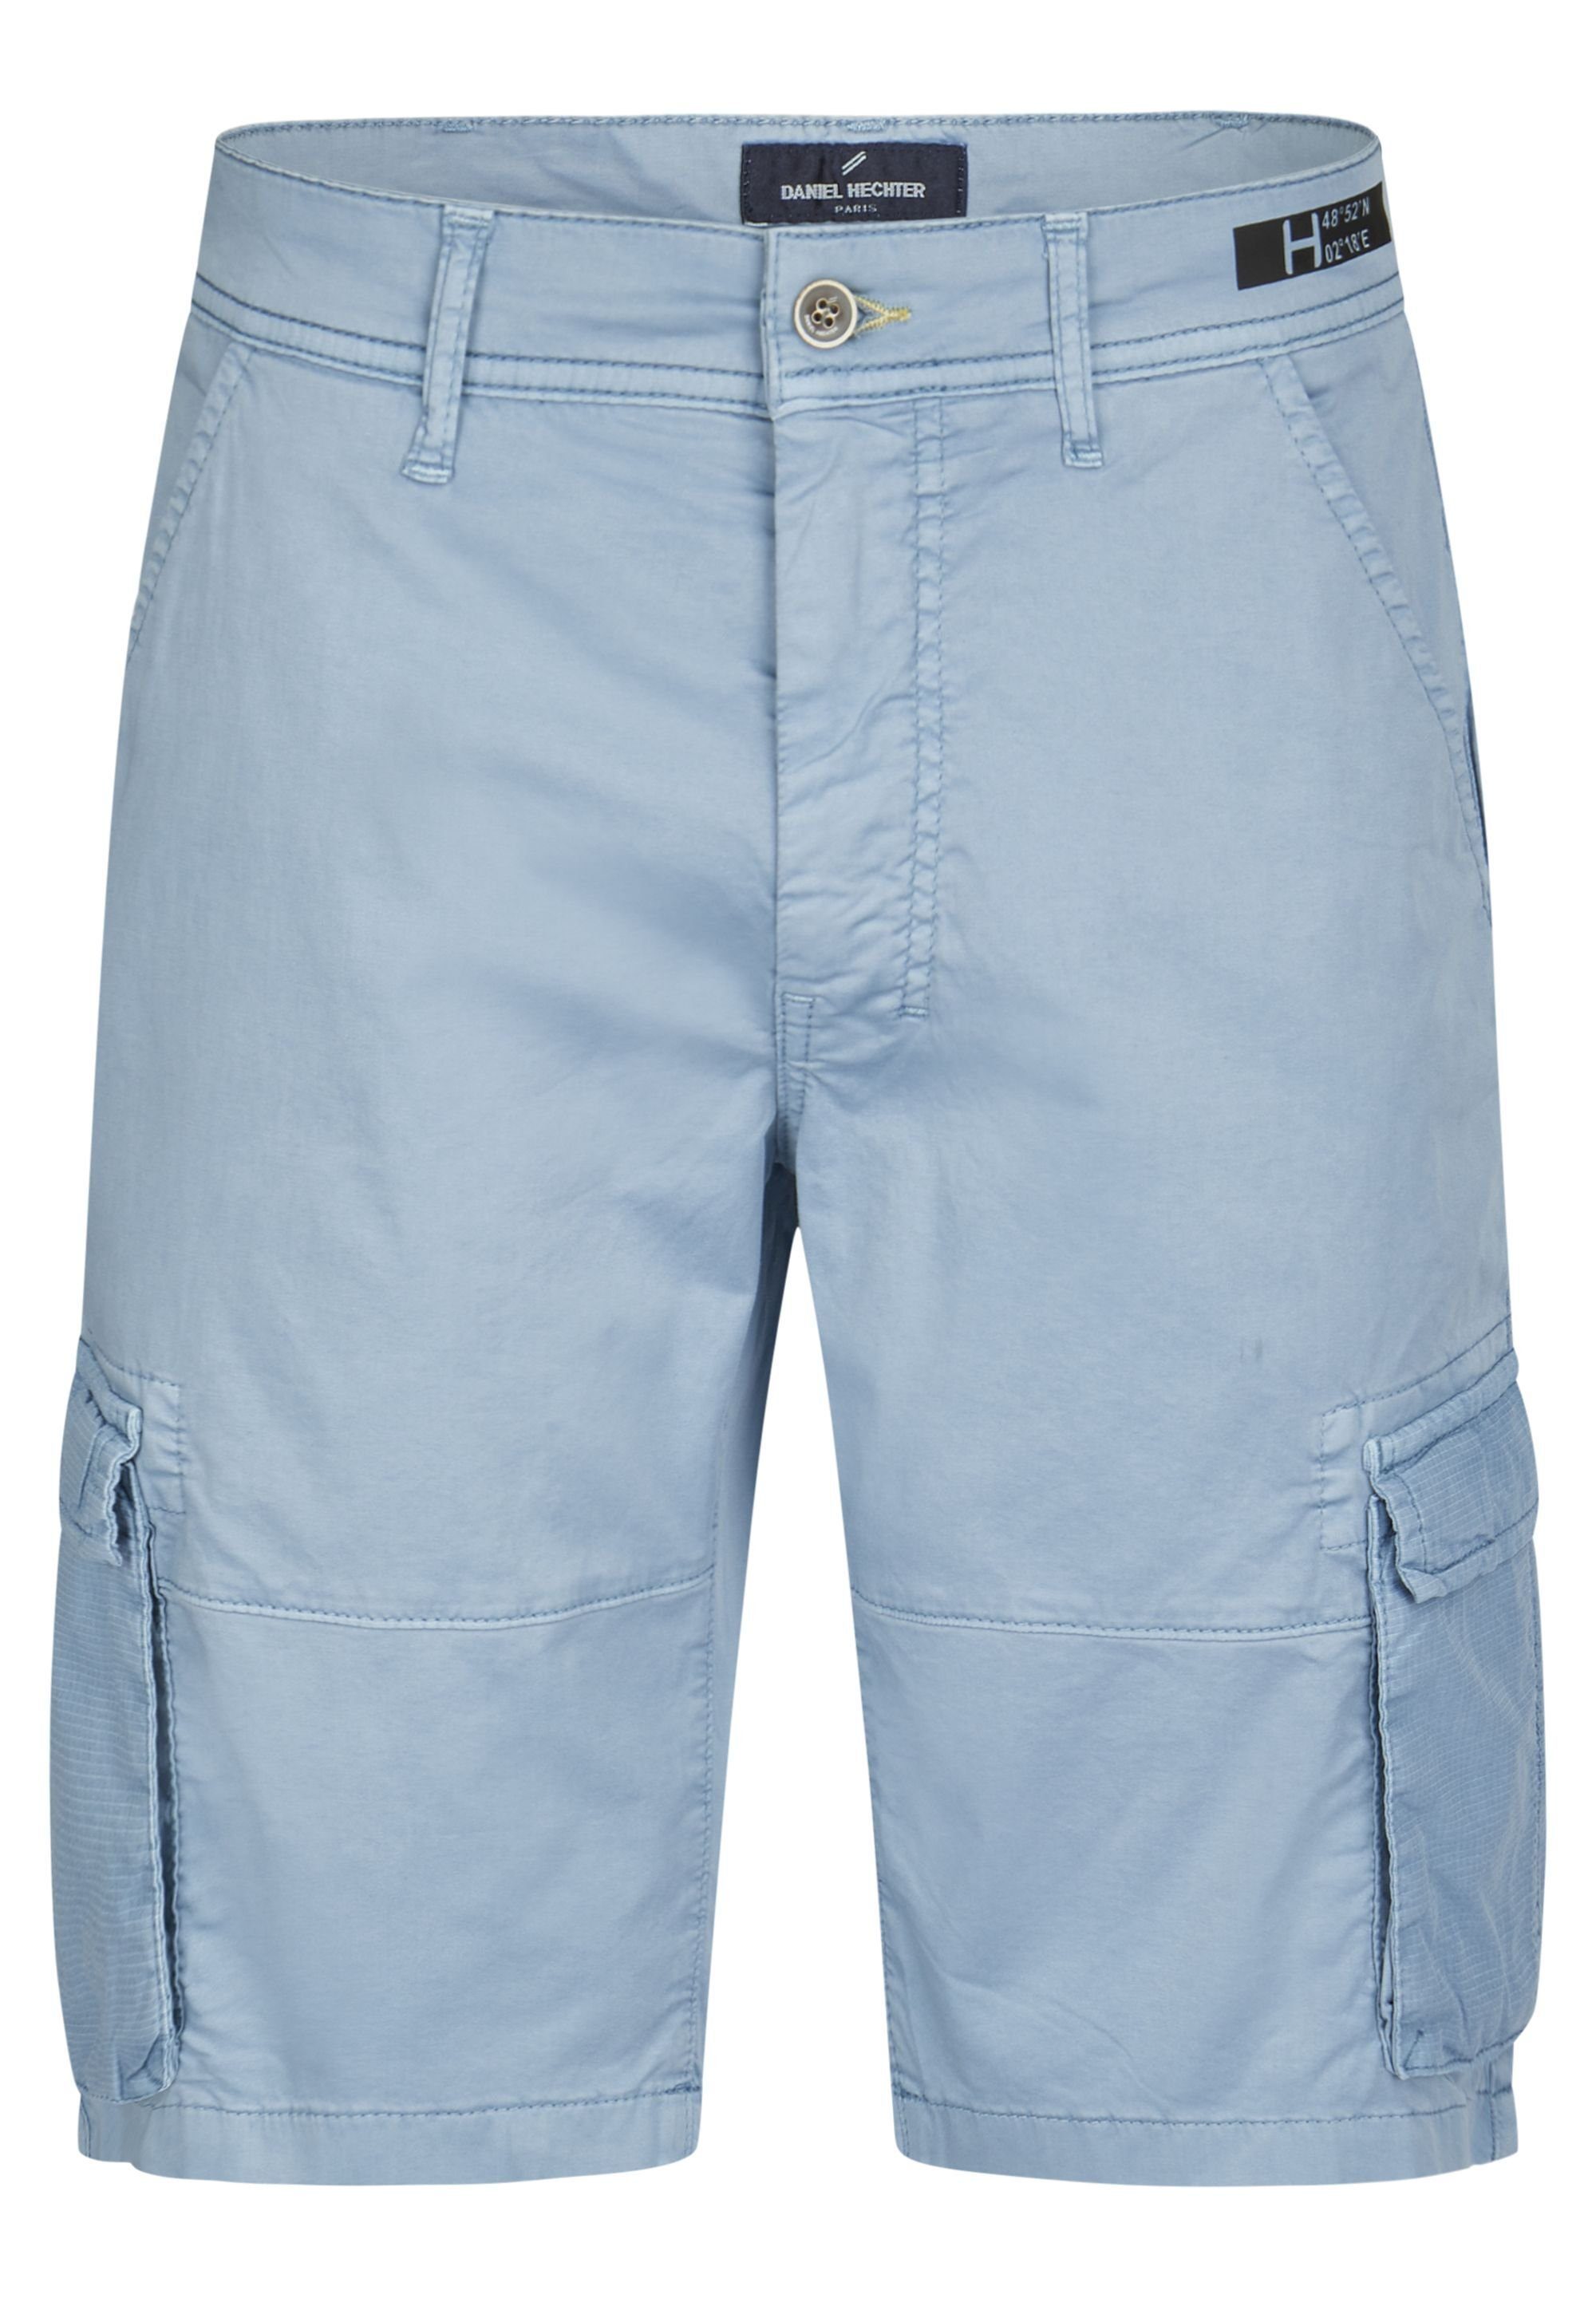 HECHTER PARIS blue steel Shorts